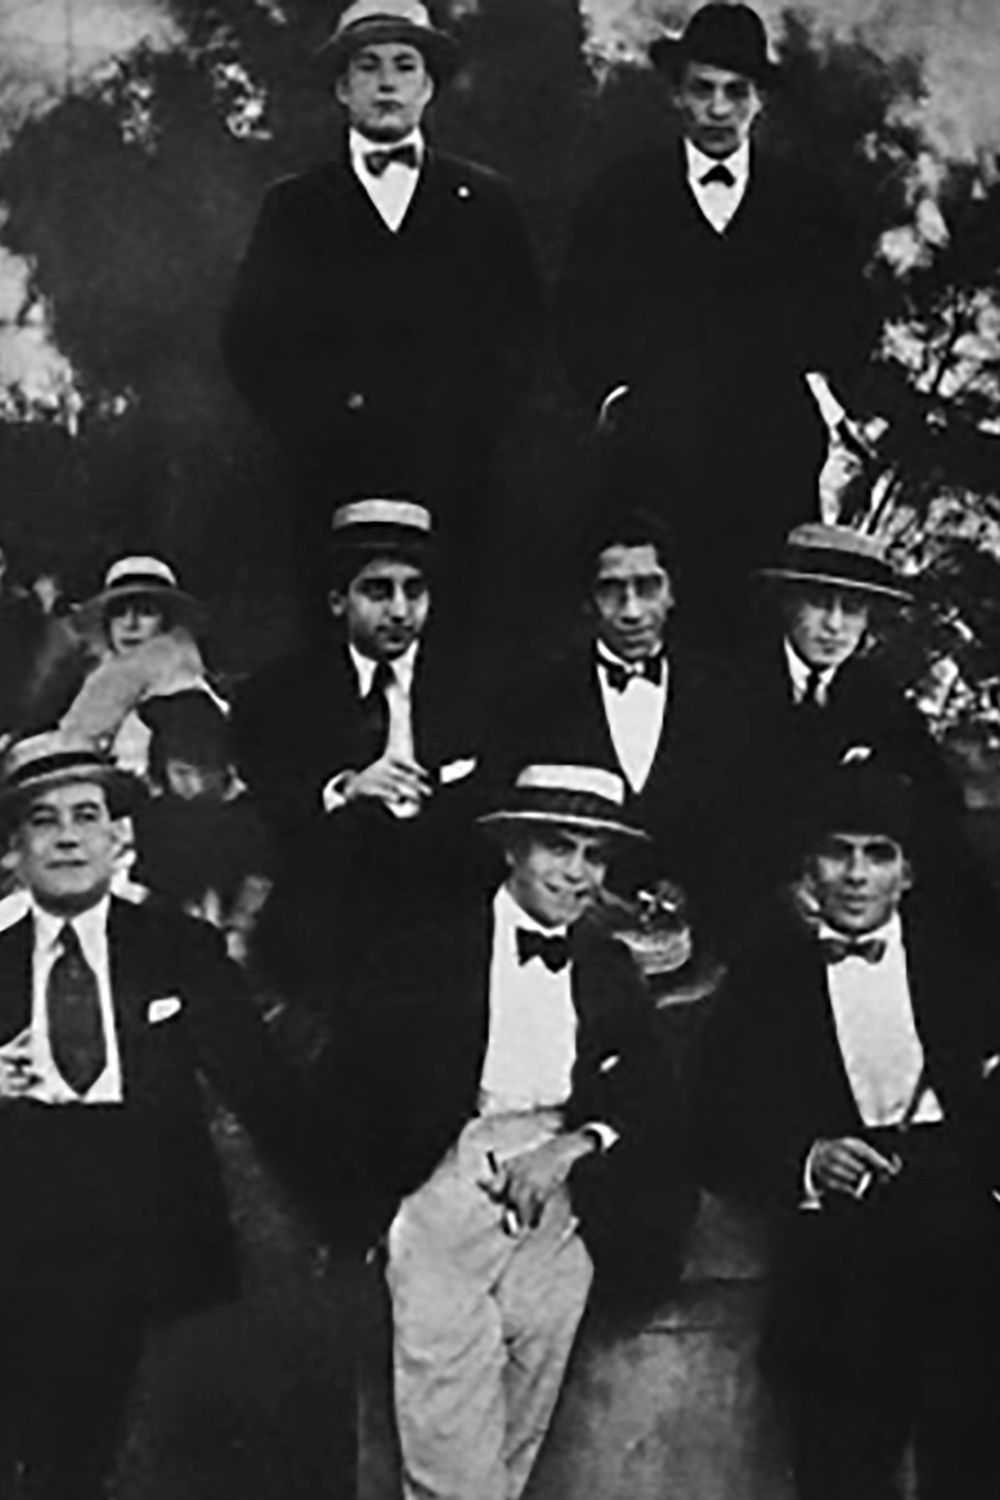 Eduardo Arolas, bandoneonista, director y compositor de nuestro Tango, con su orquesta en Montevideo en 1919.